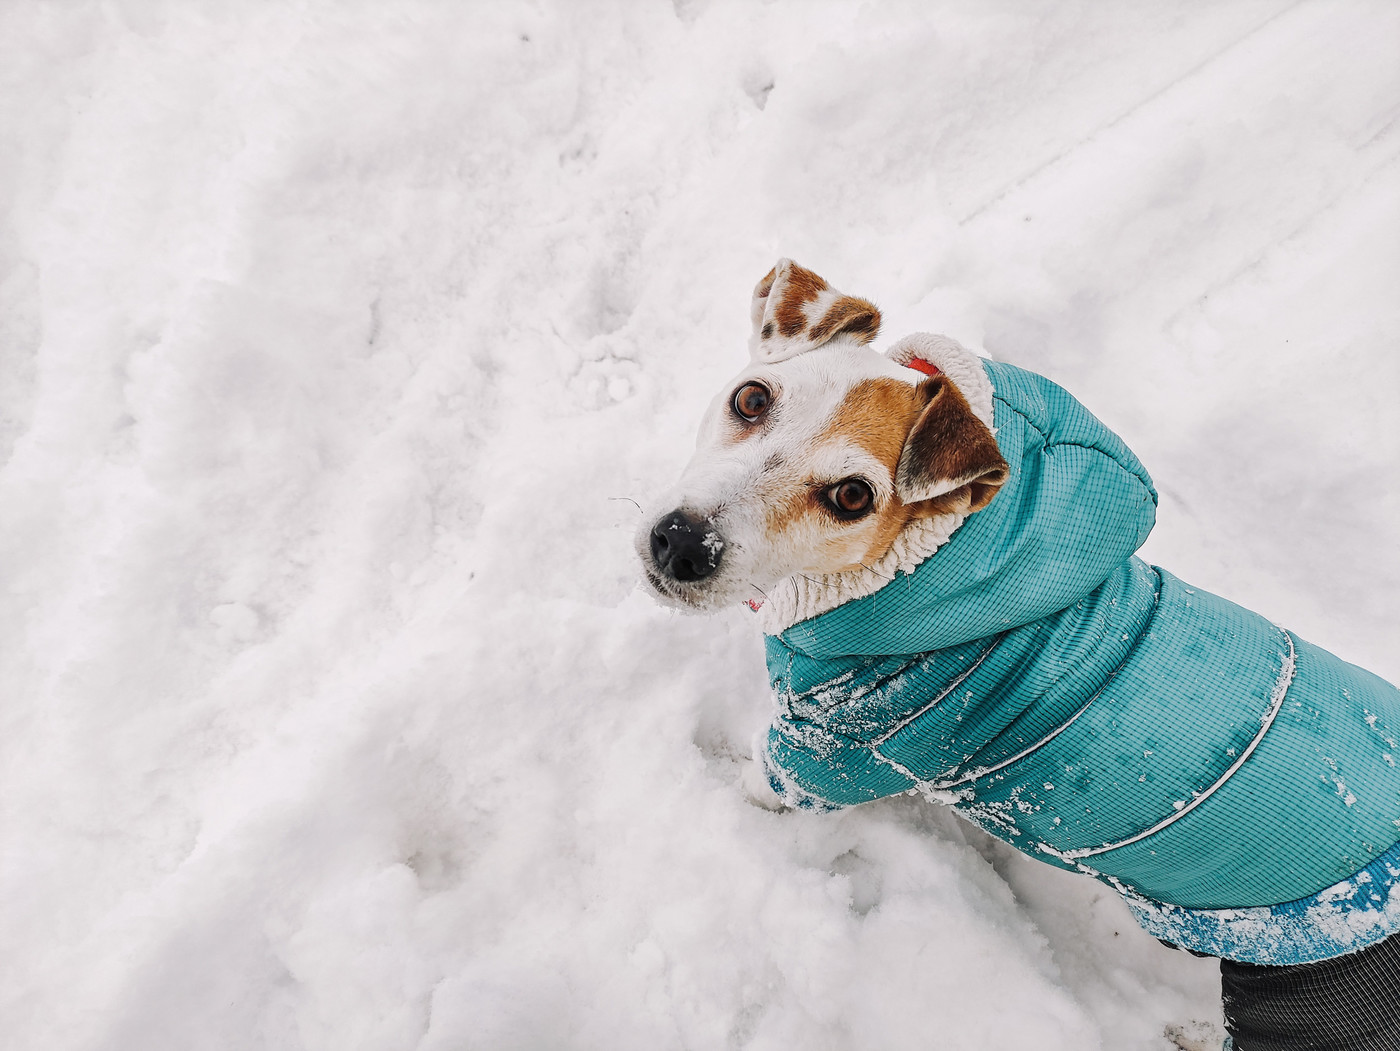 Kleidung sorgt für Wärme: Friert der Hund im Winter schnell, ist es ratsam, ihm einen Pullover oder eine Jacke anzuziehen.